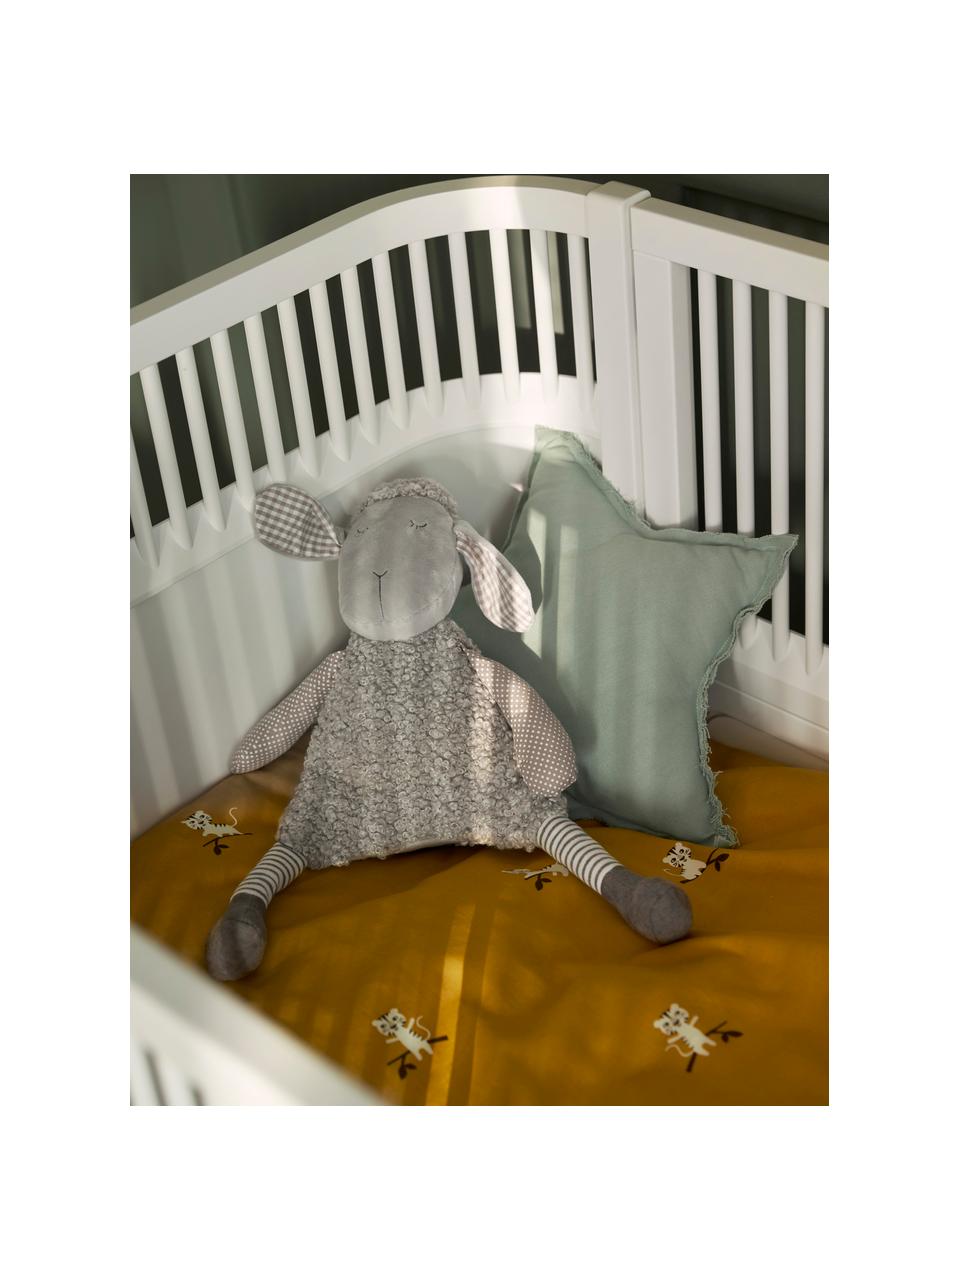 Verstellbares Baby-Bett Junior, Birkenholz, lackiert, Weiß, B 115 x H 88 cm